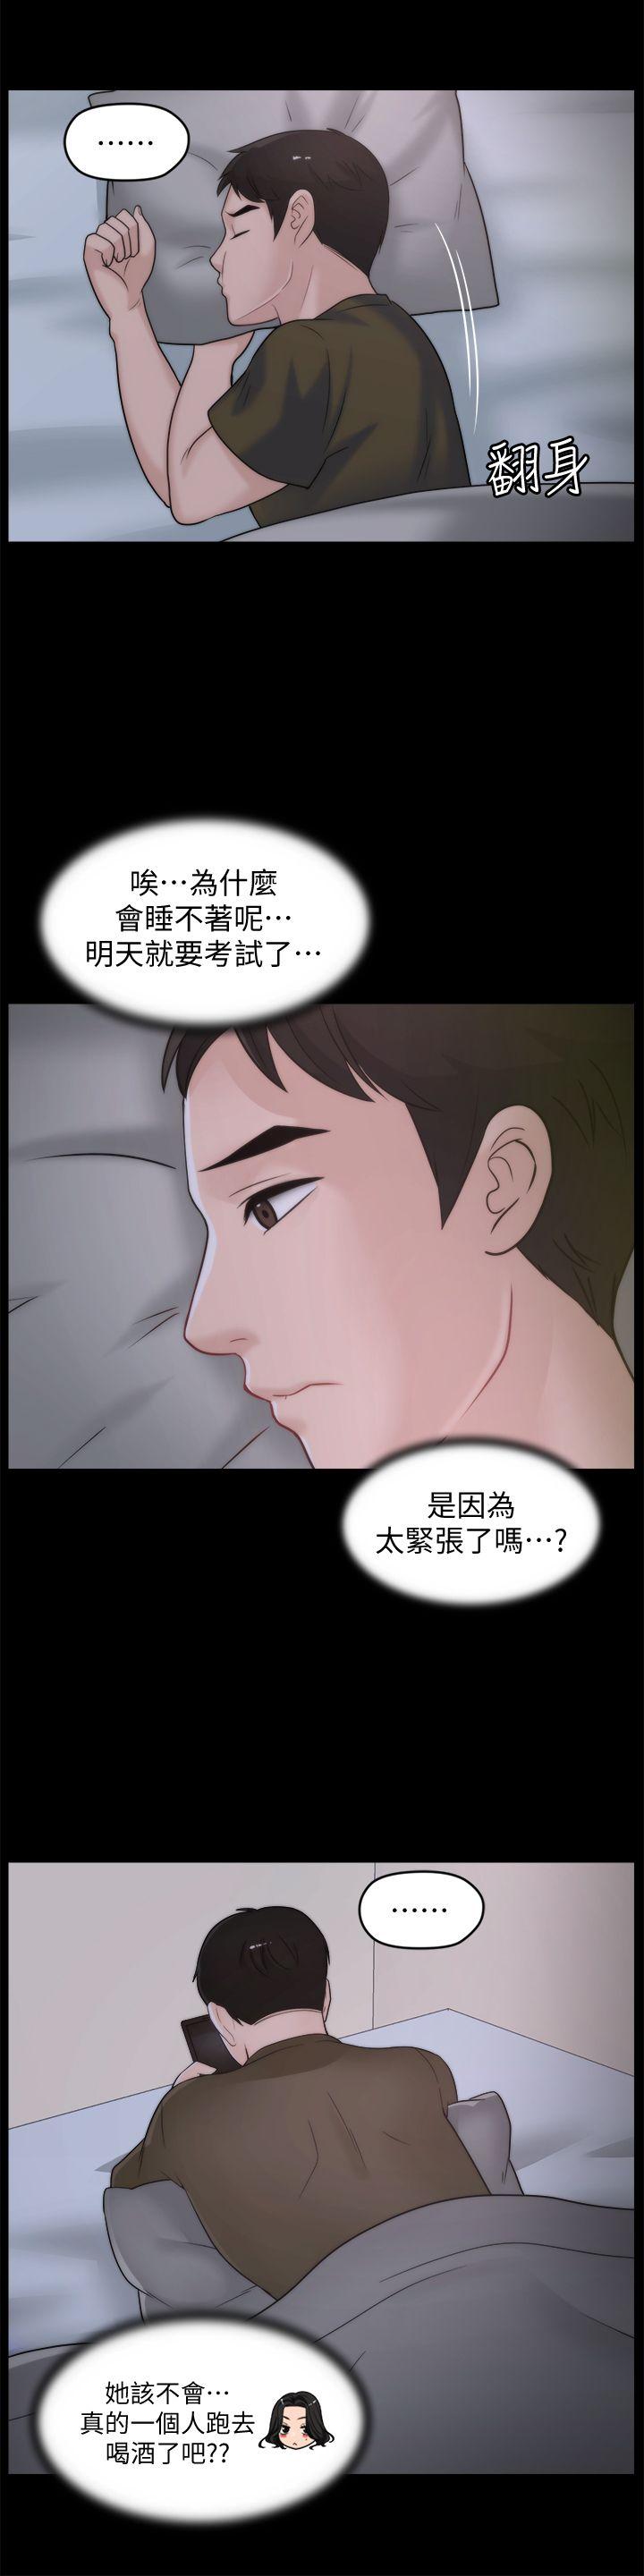 《偷偷爱》漫画 第41话-慧琳炽热的爱